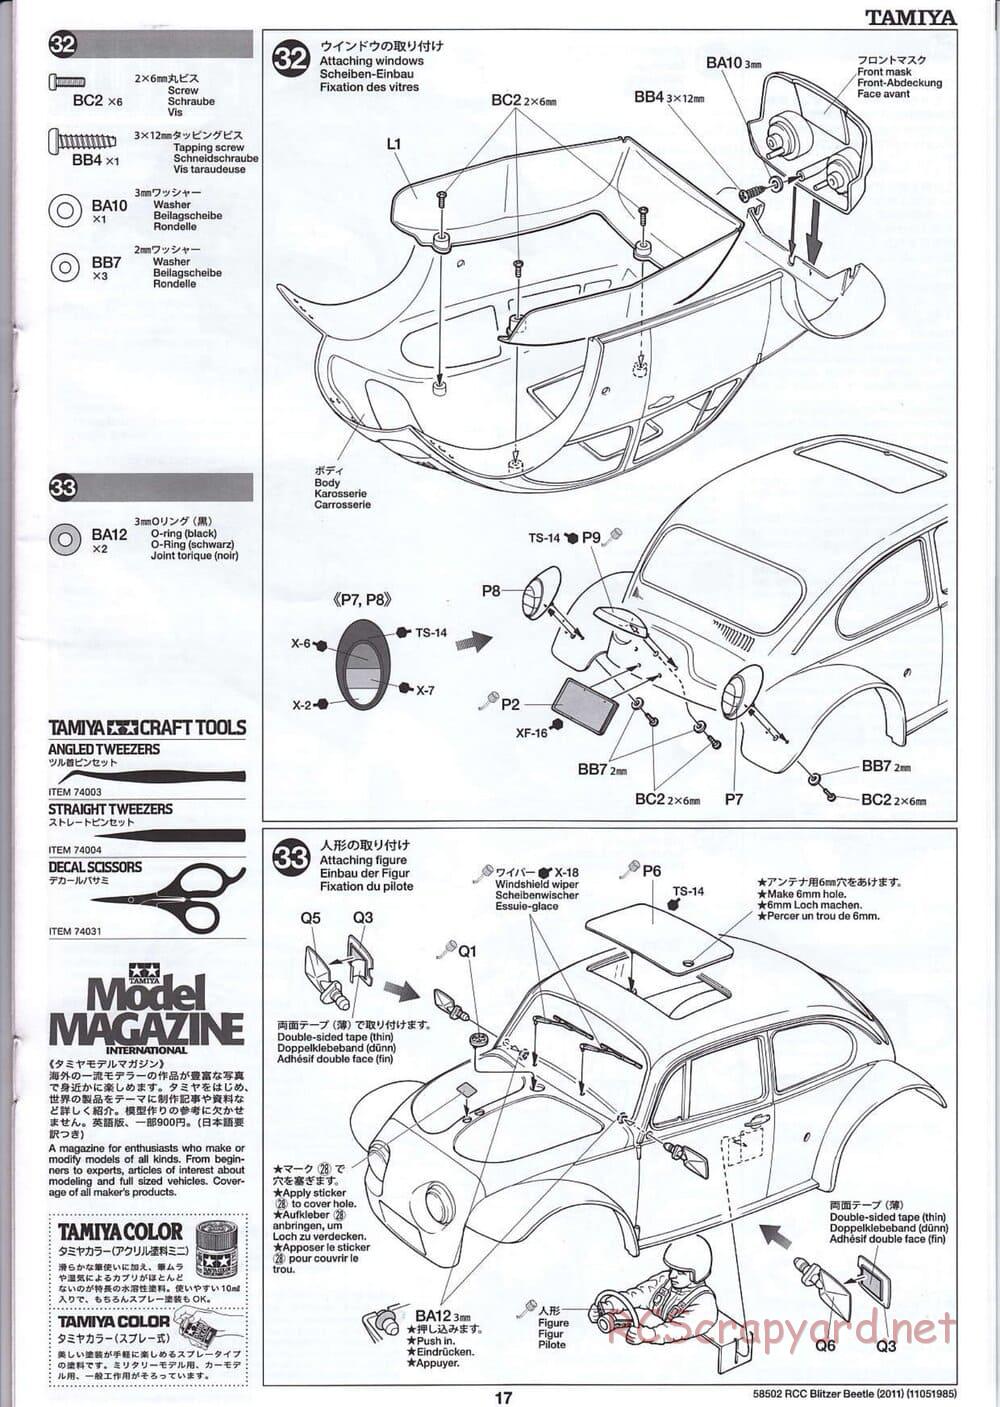 Tamiya - Blitzer Beetle 2011 - FAL Chassis - Manual - Page 17